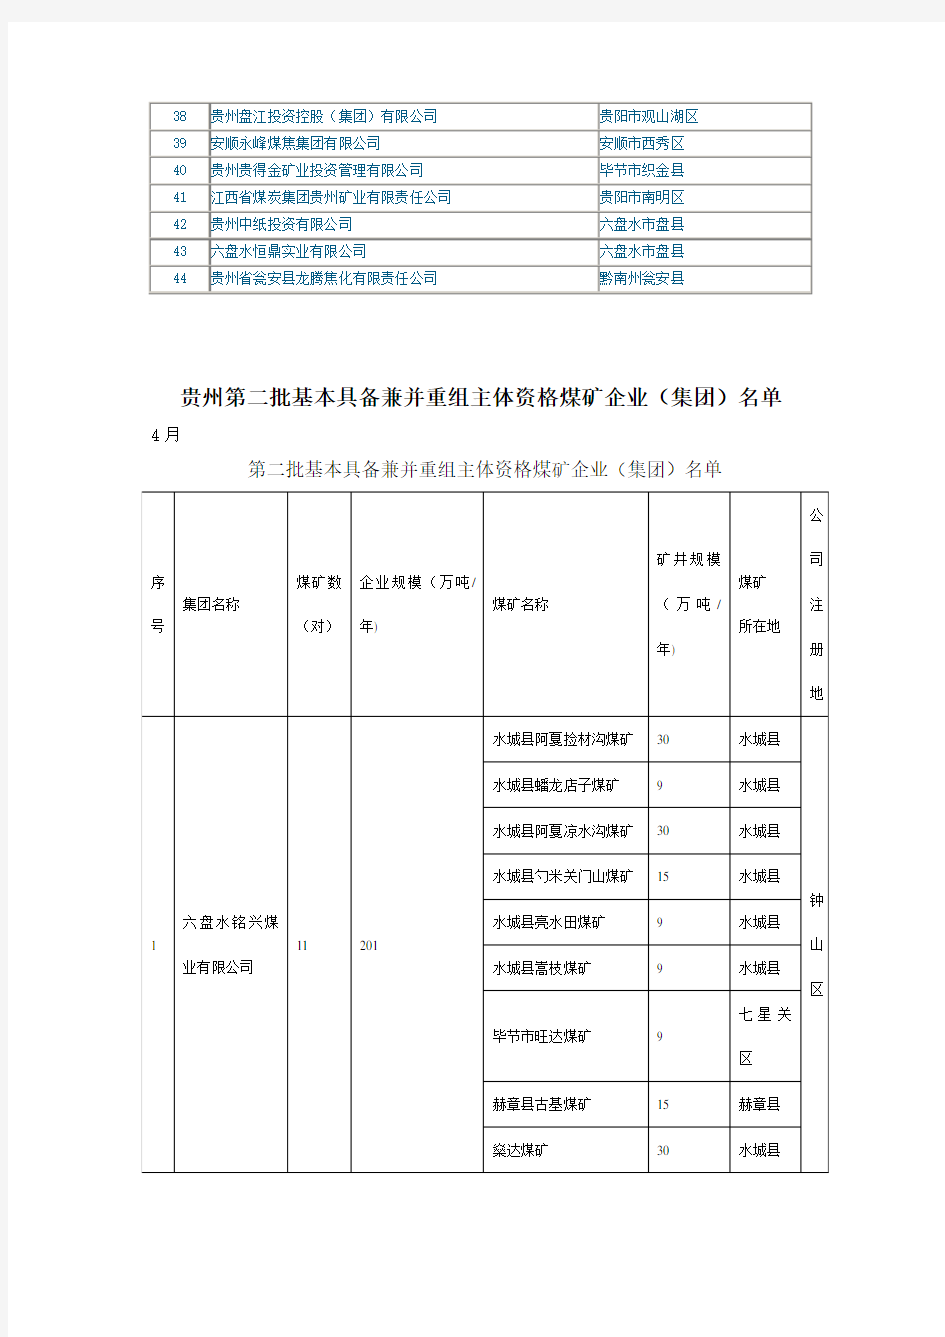 贵州省第一、二批基本具备兼并重组主体资格煤矿企业(集